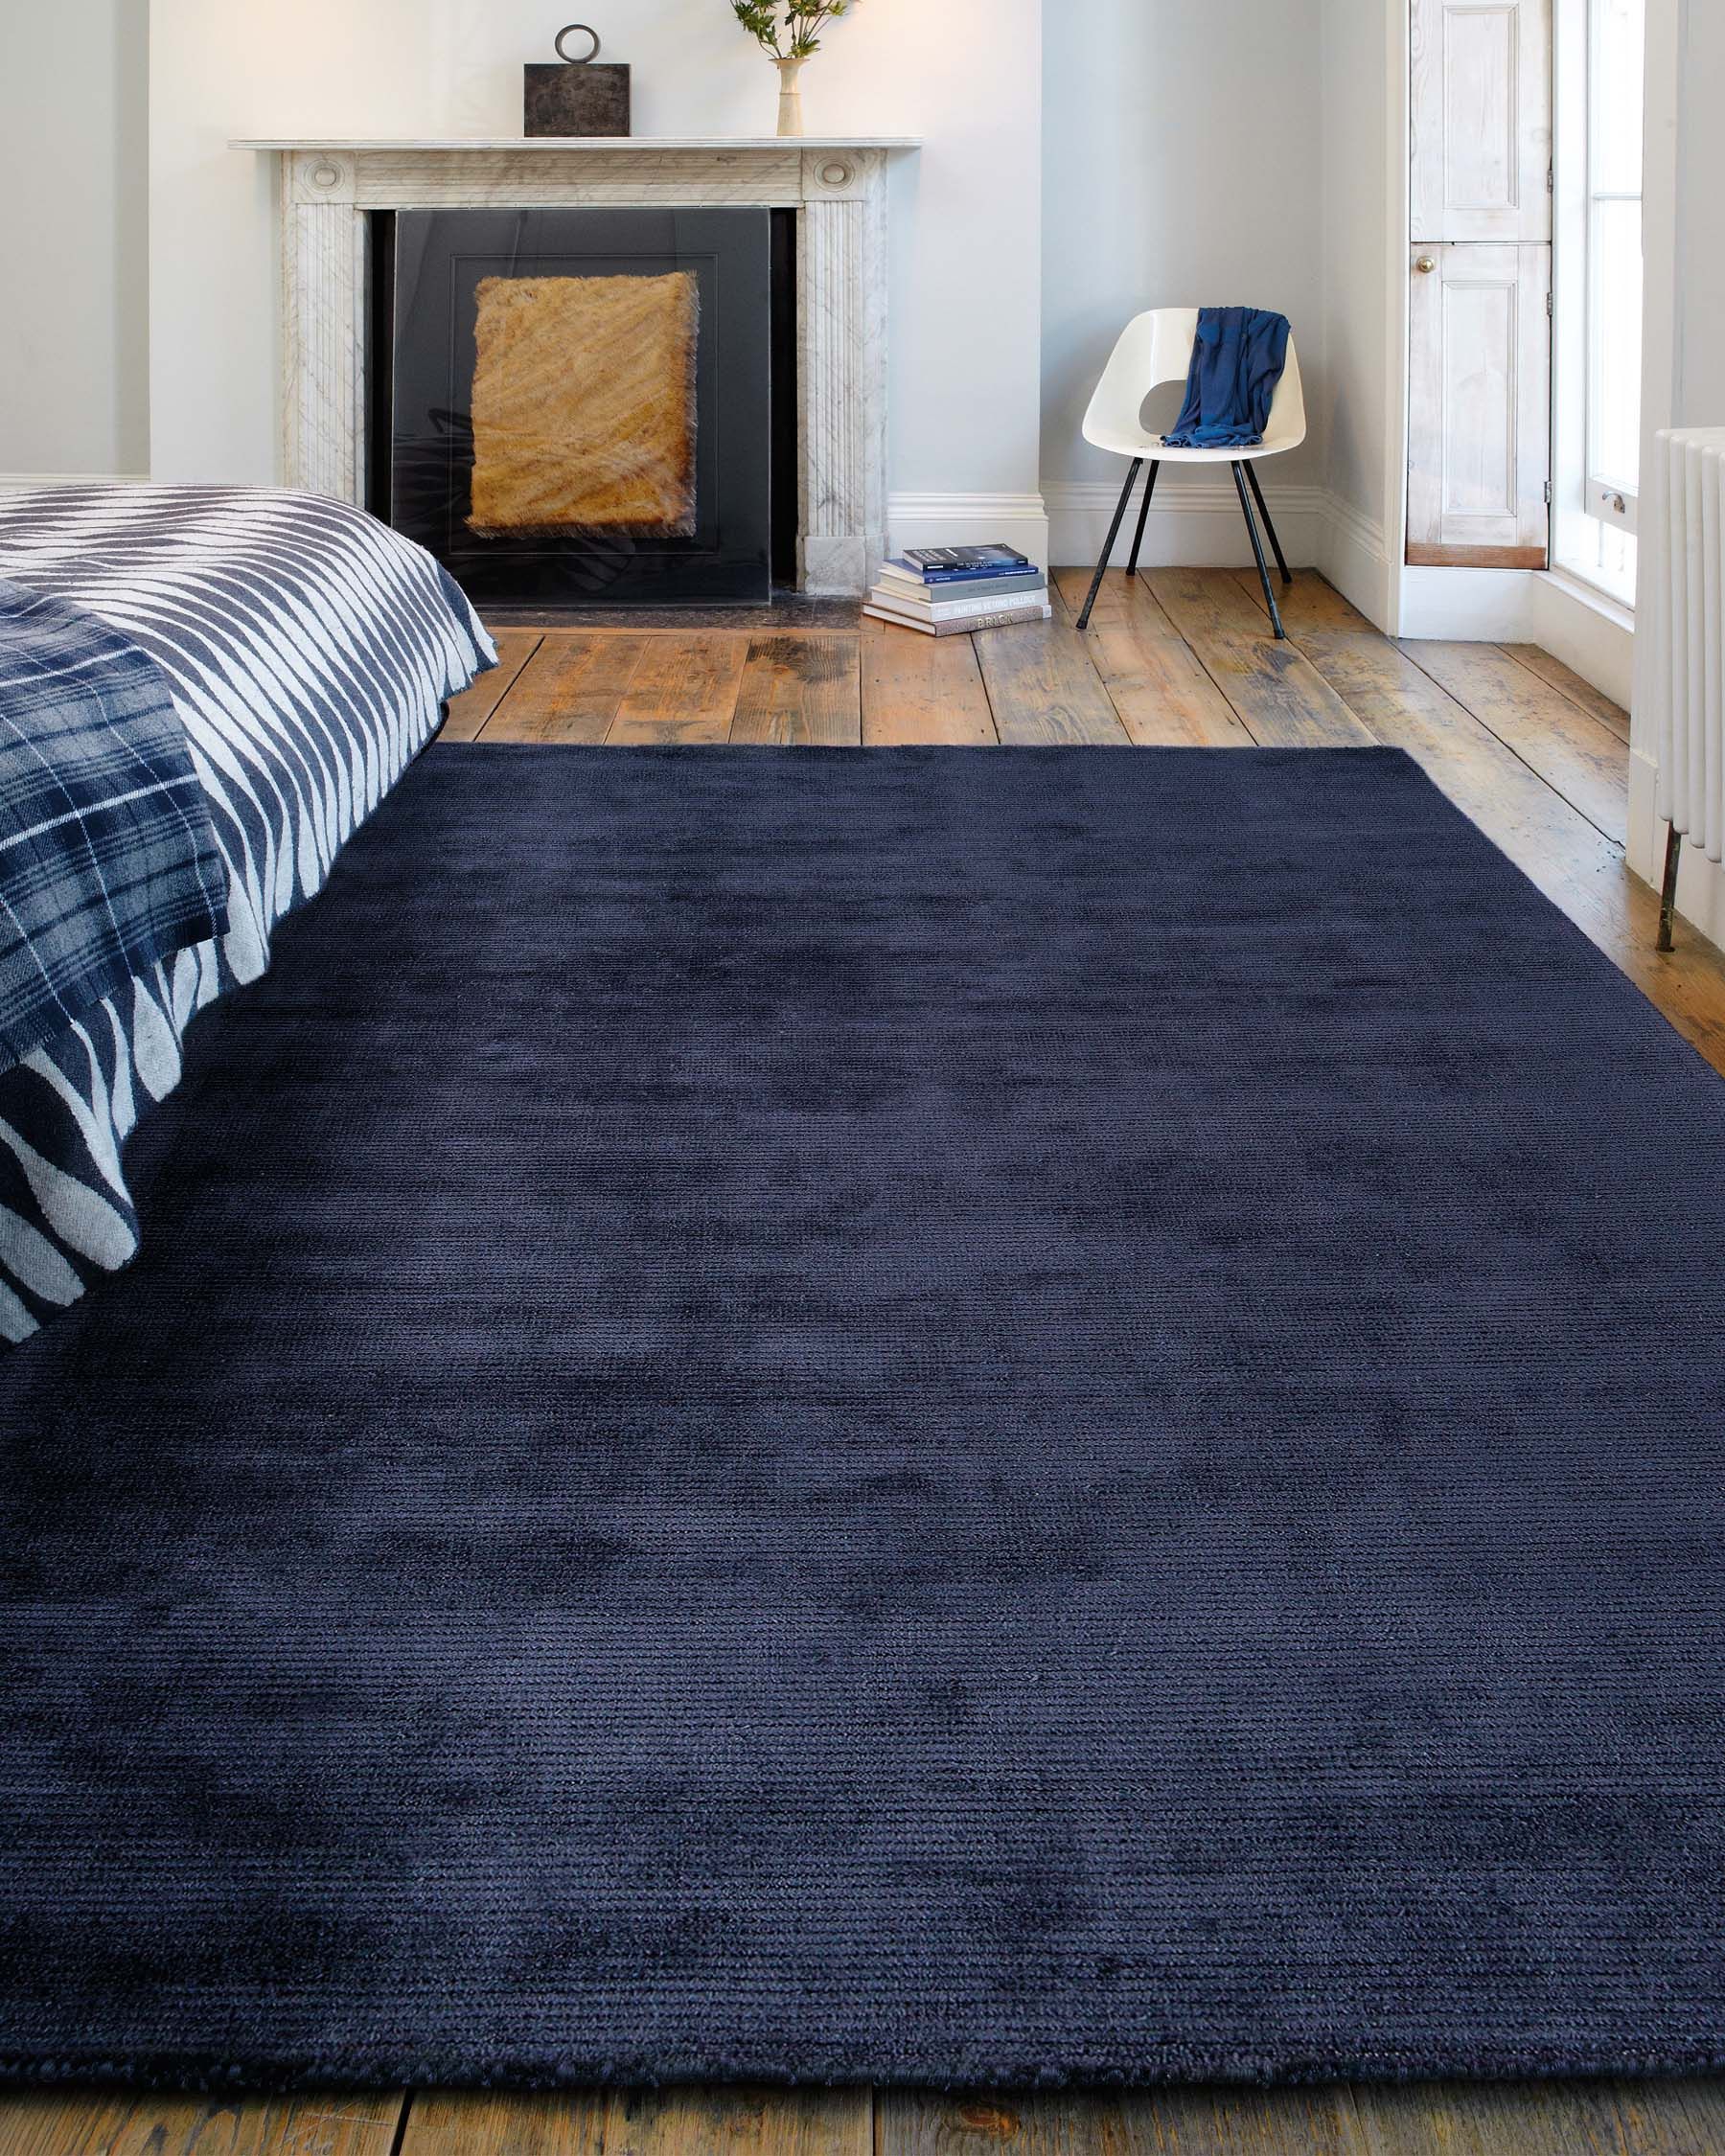 The Elegant Appeal of a Blue Carpet Bedroom